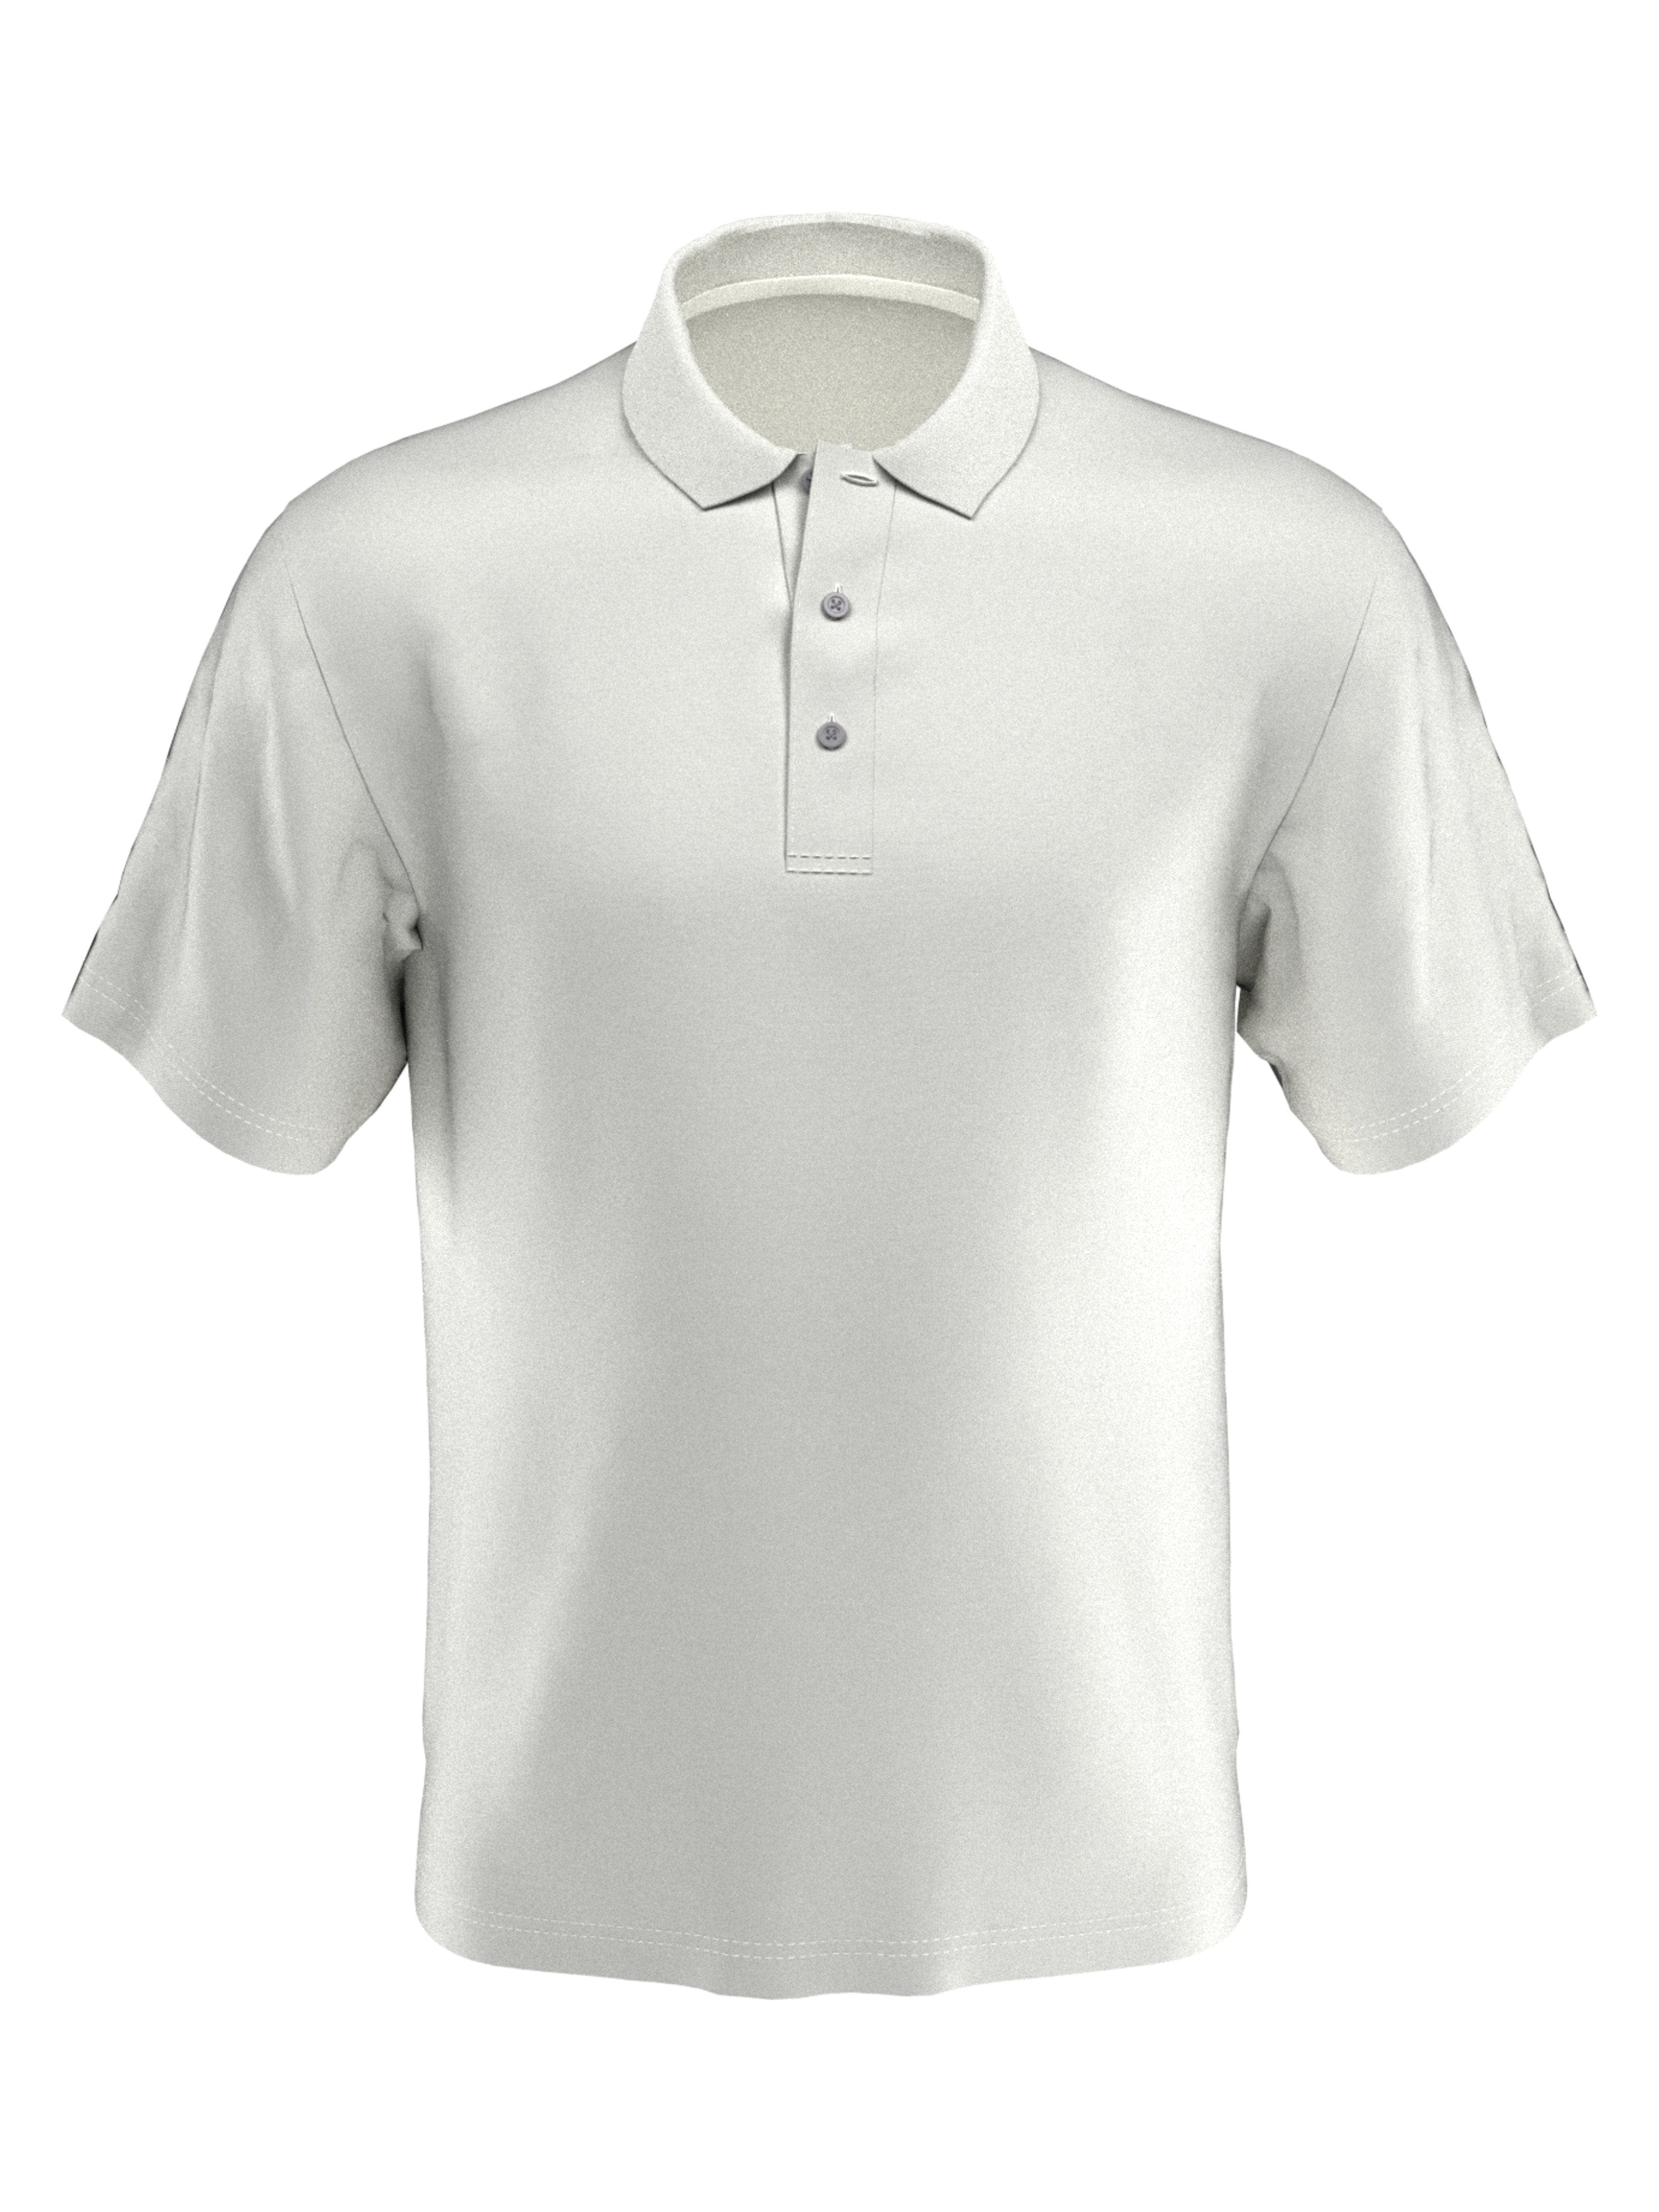 PGA TOUR Apparel Boys Short Sleeve AirFlux™ Polo Shirt, Size XL, White, 100% Polyester | Golf Apparel Shop